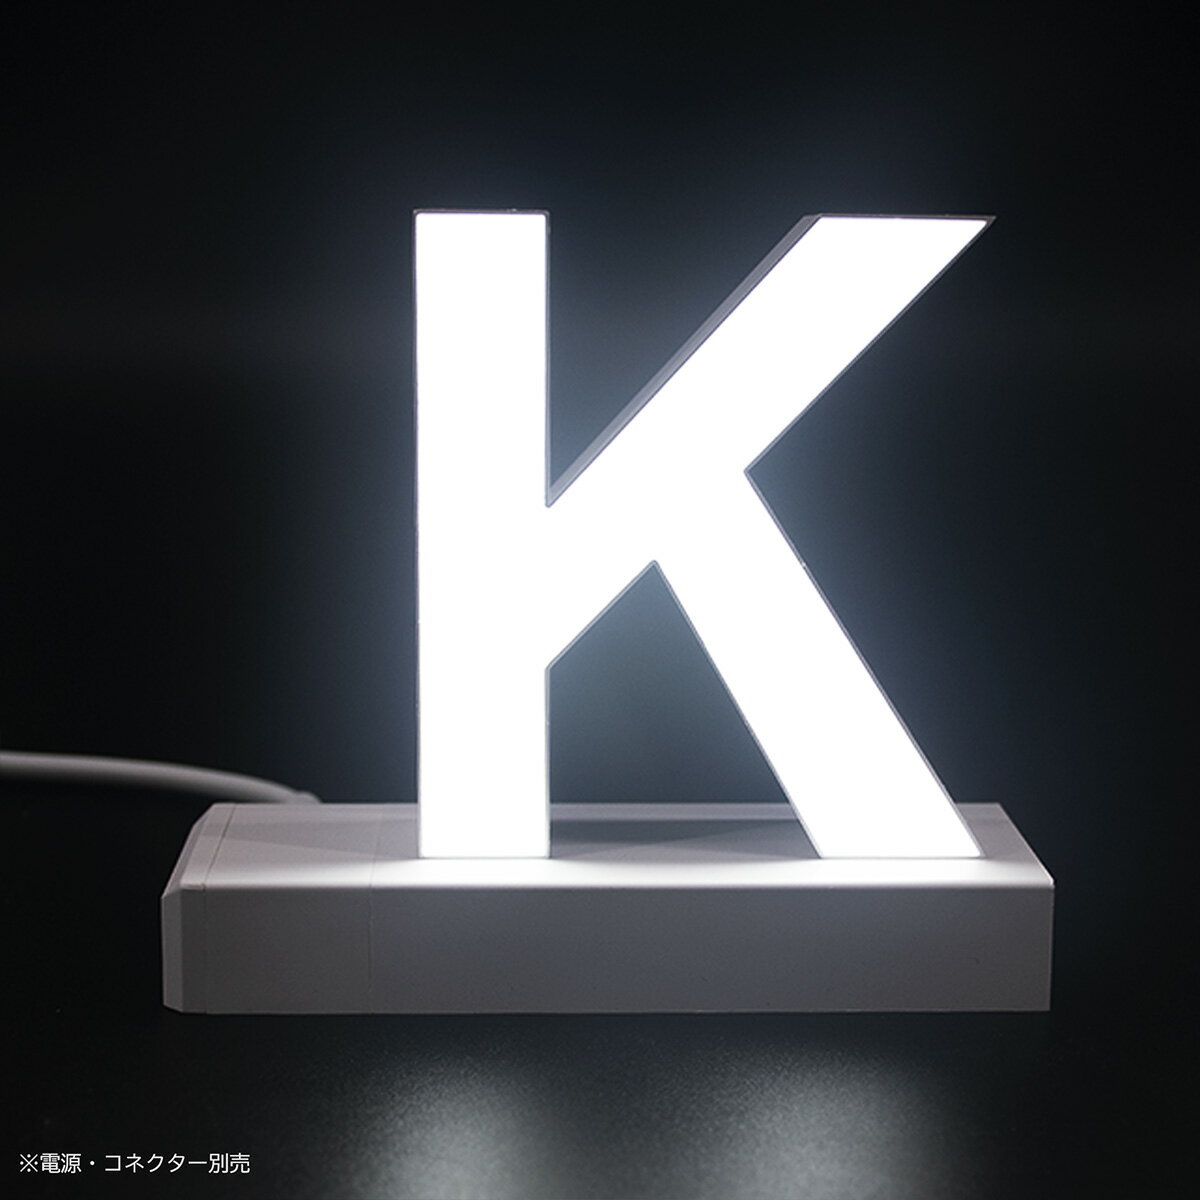 LEDチャンネル文字 サイン マグネットタイプ [K] 75mm abcMIX 電源別売 照明 看板 アクリサンデー